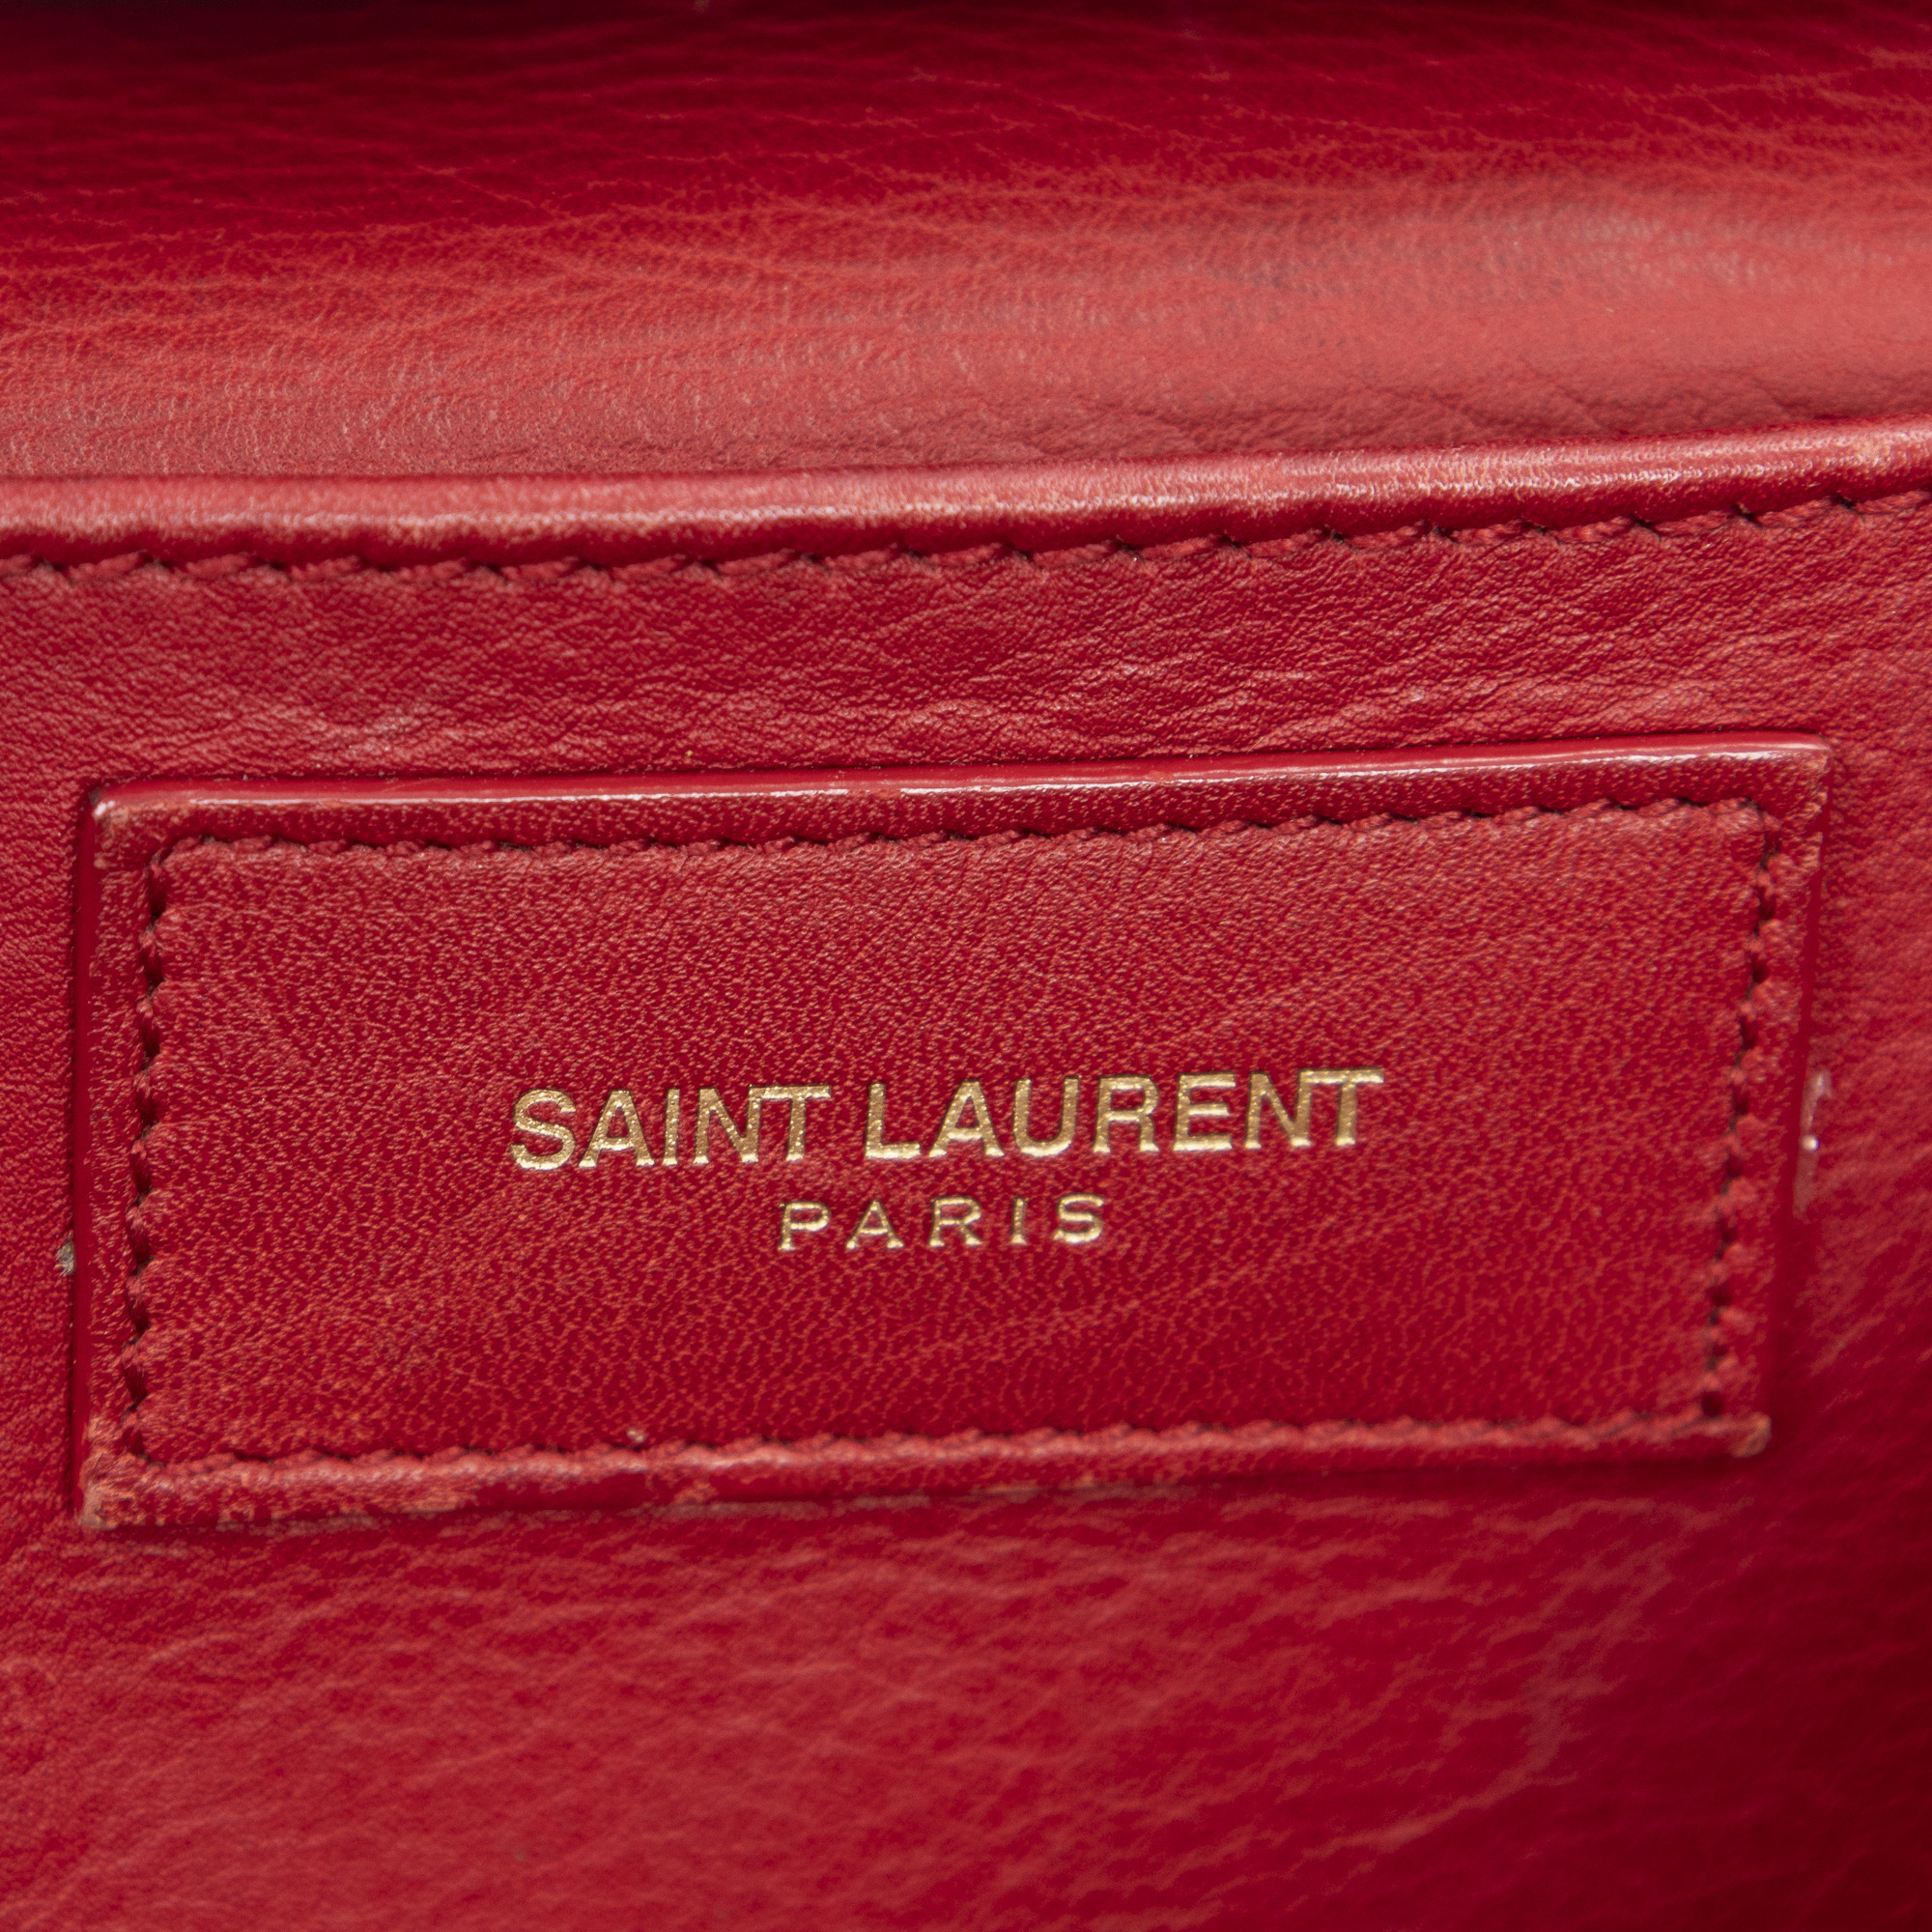 Saint Laurent, Bags, Yves Saint Laurent Cabas Chyc Small